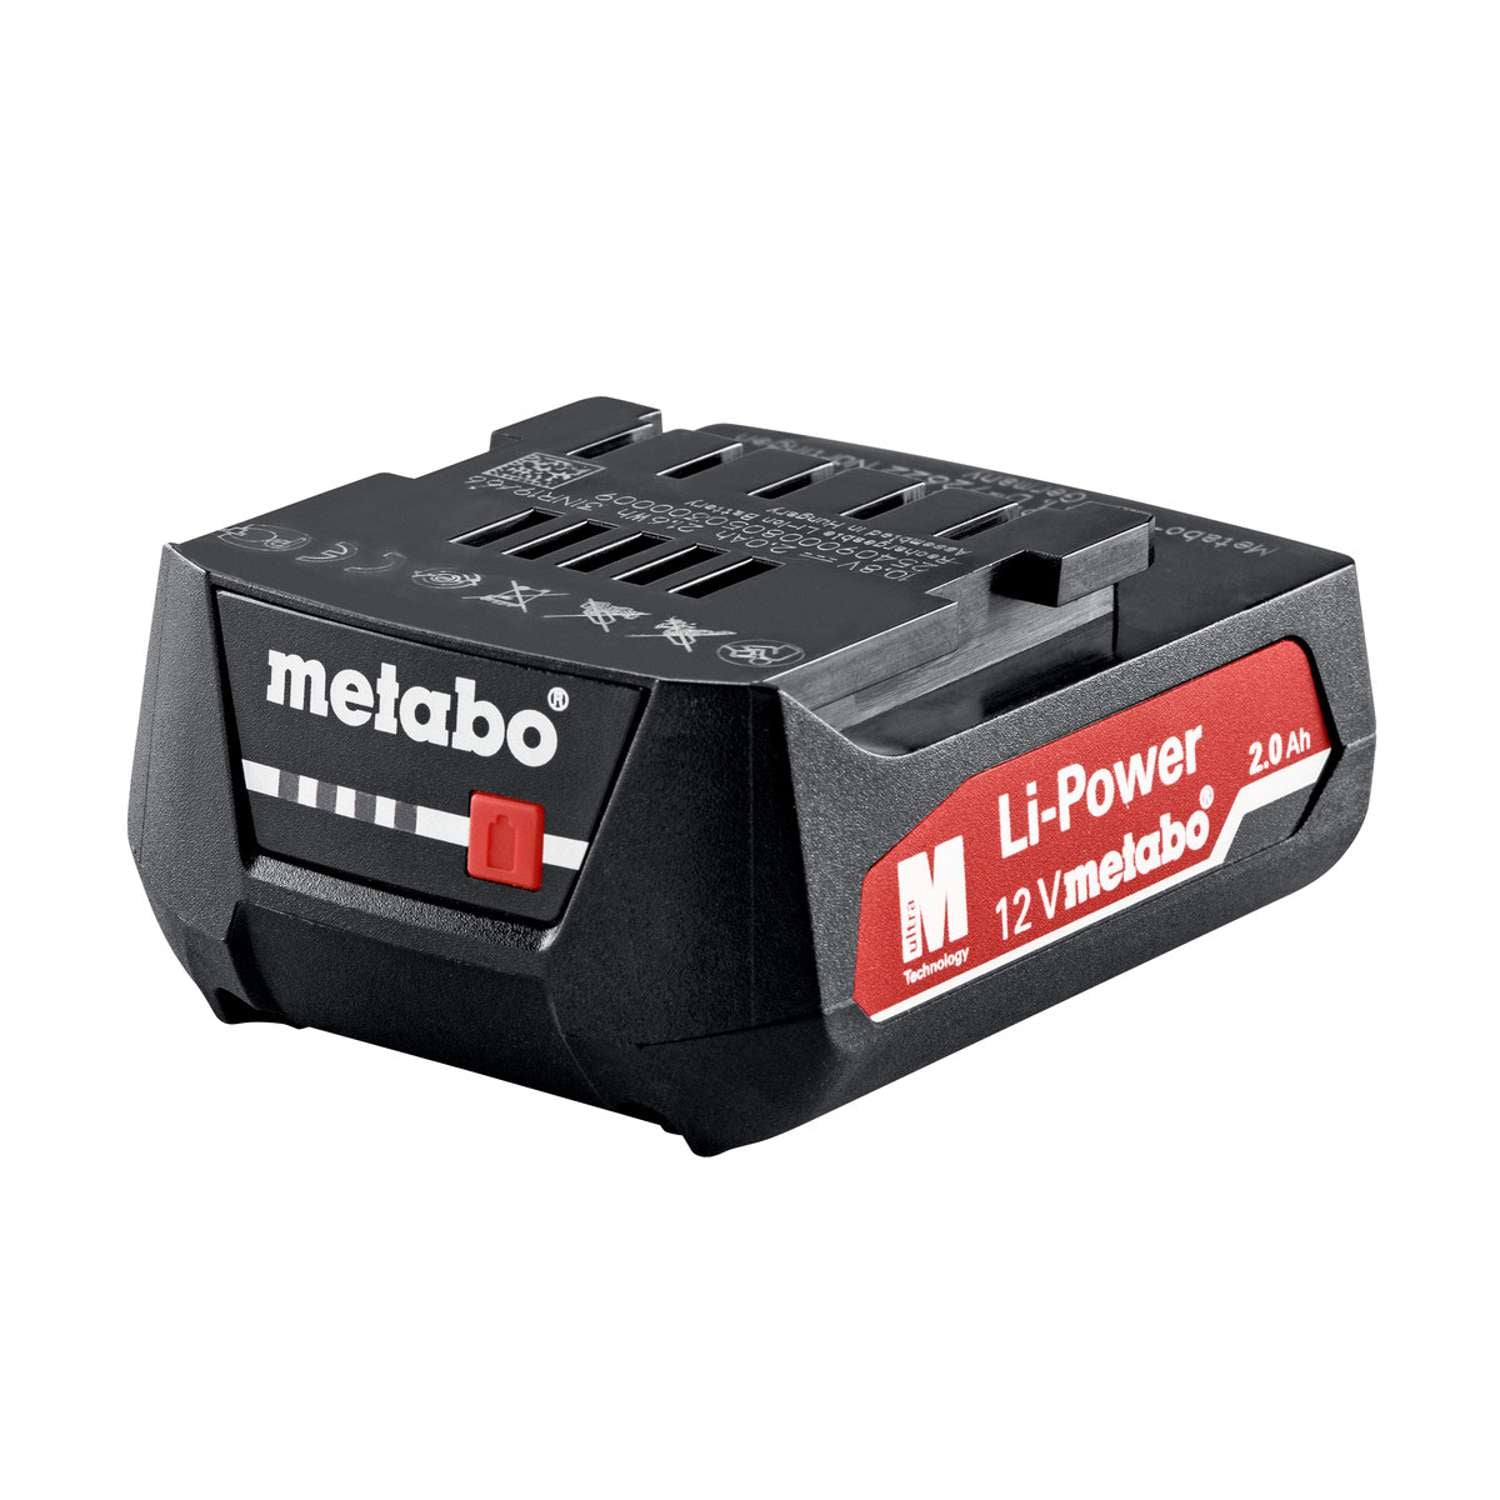 Billede af METABO Batteri 12V 2,0Ah Li-power (625406000) hos Toolster.dk